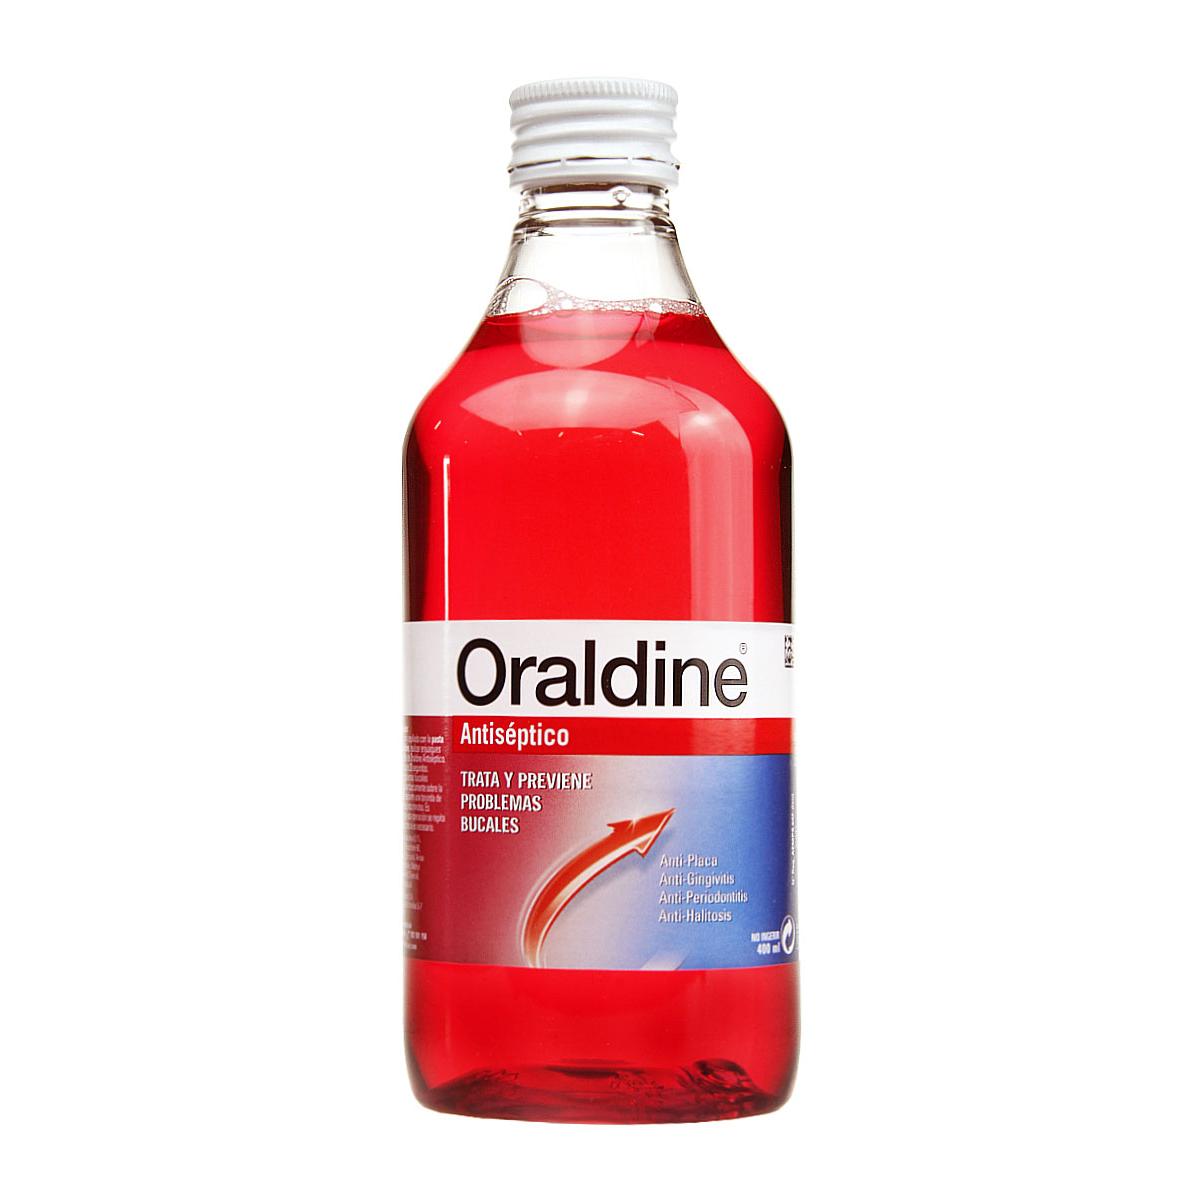 Oraldine - Oraldine antiseptico 400 ml